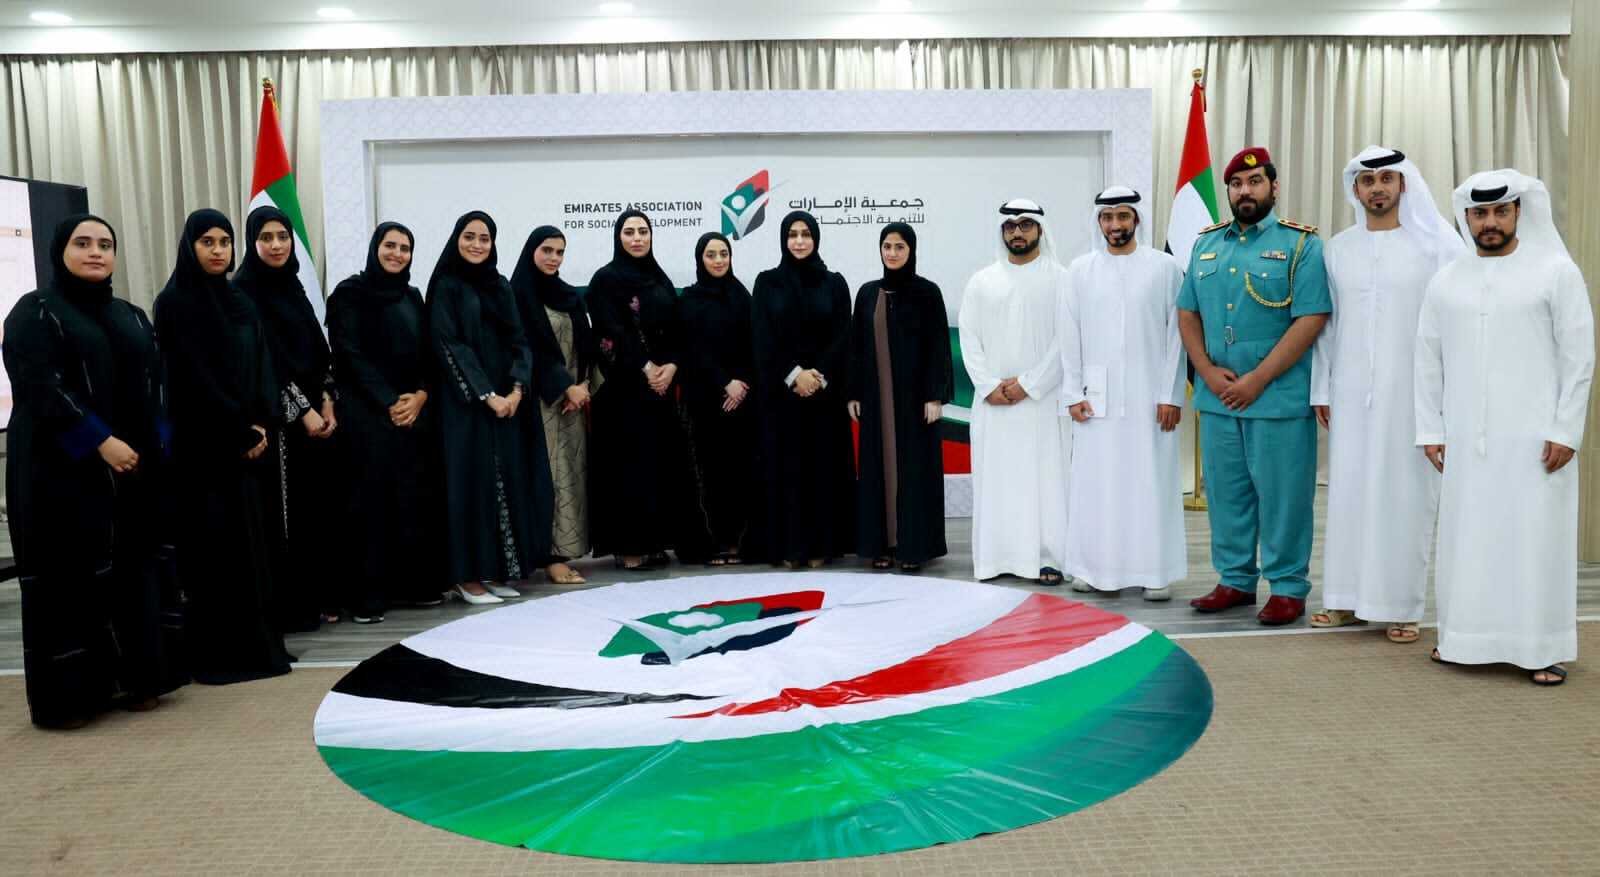 الإمارات للتنمية الاجتماعية برأس الخيمة تنظم لقاء "مجلس رأس الخيمة للشباب"
